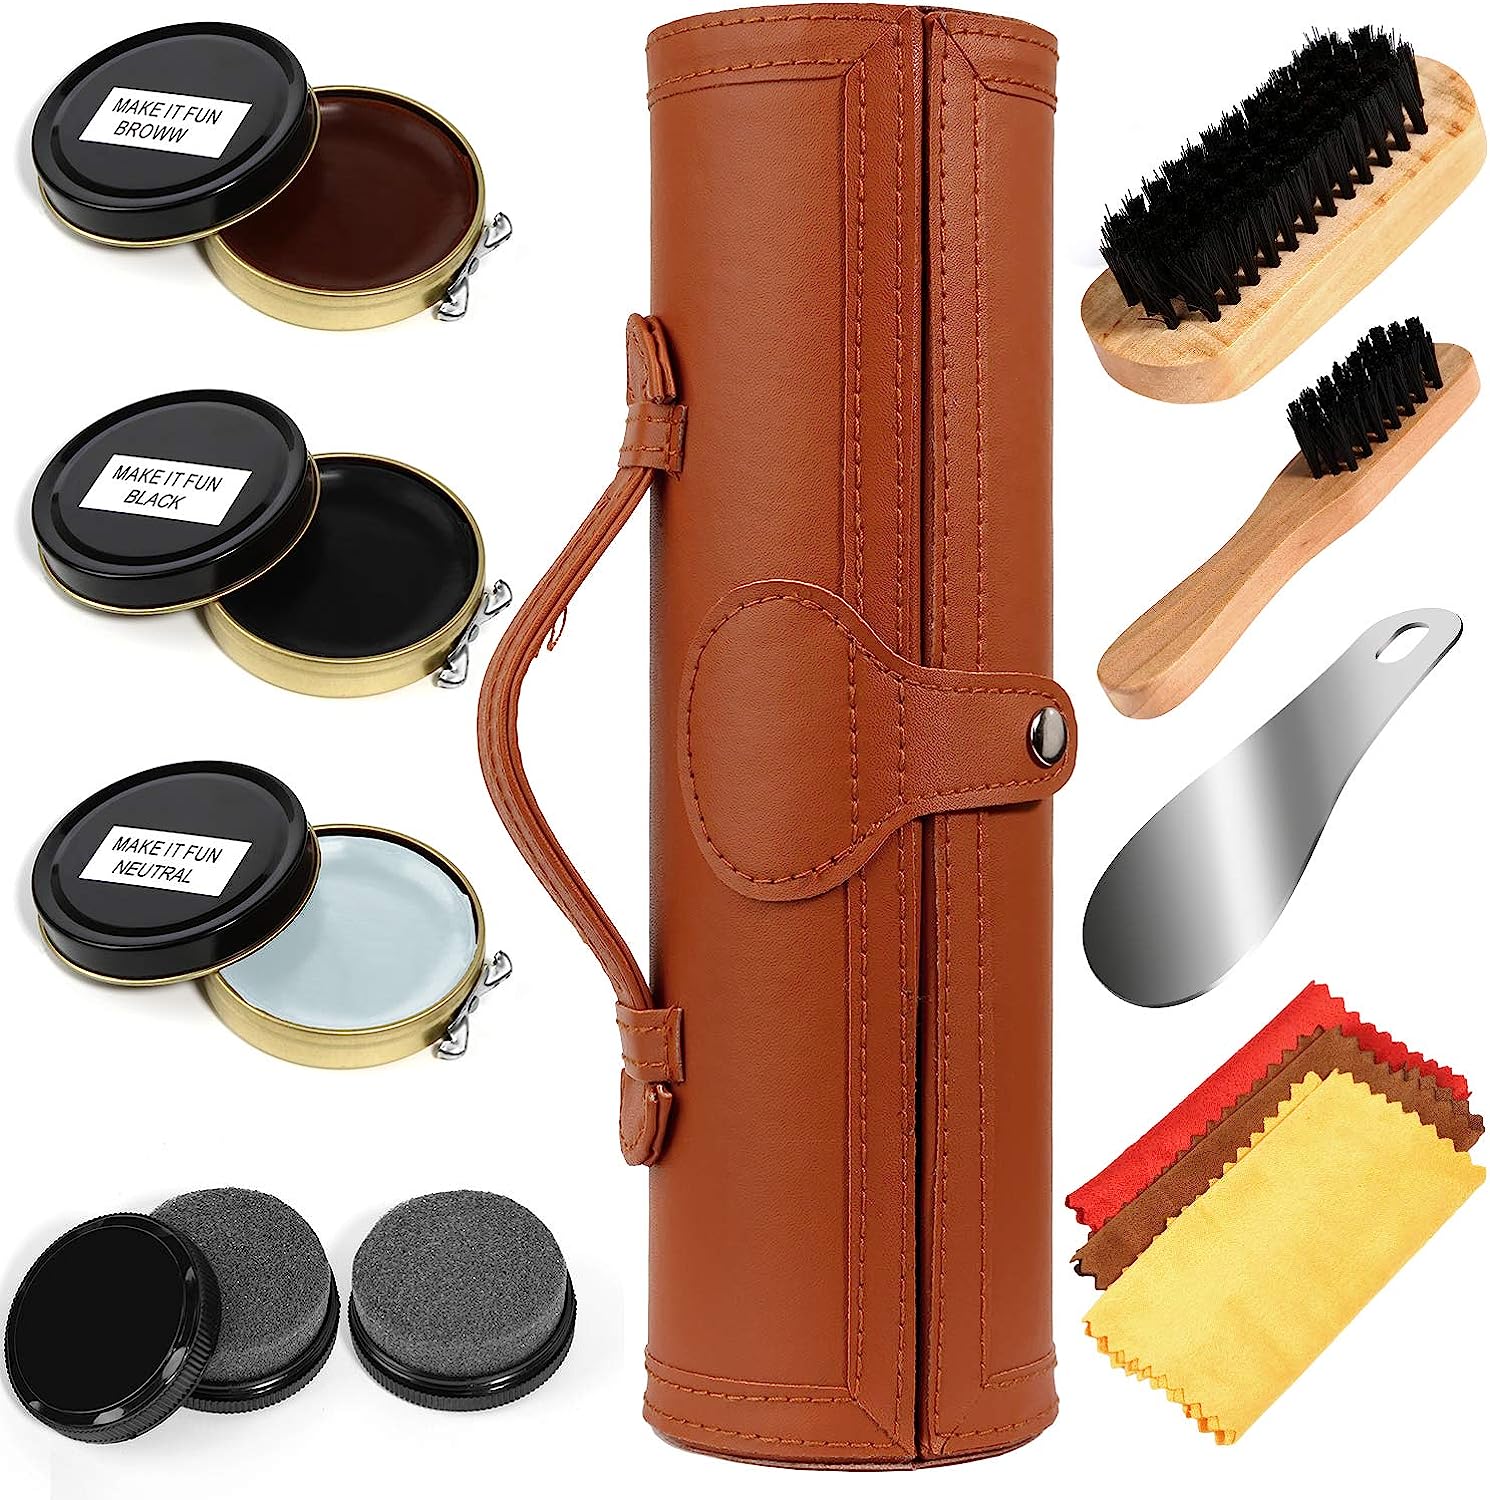 Shoe Shine Kit with PU Leather Sleek Elegant Case, [...]